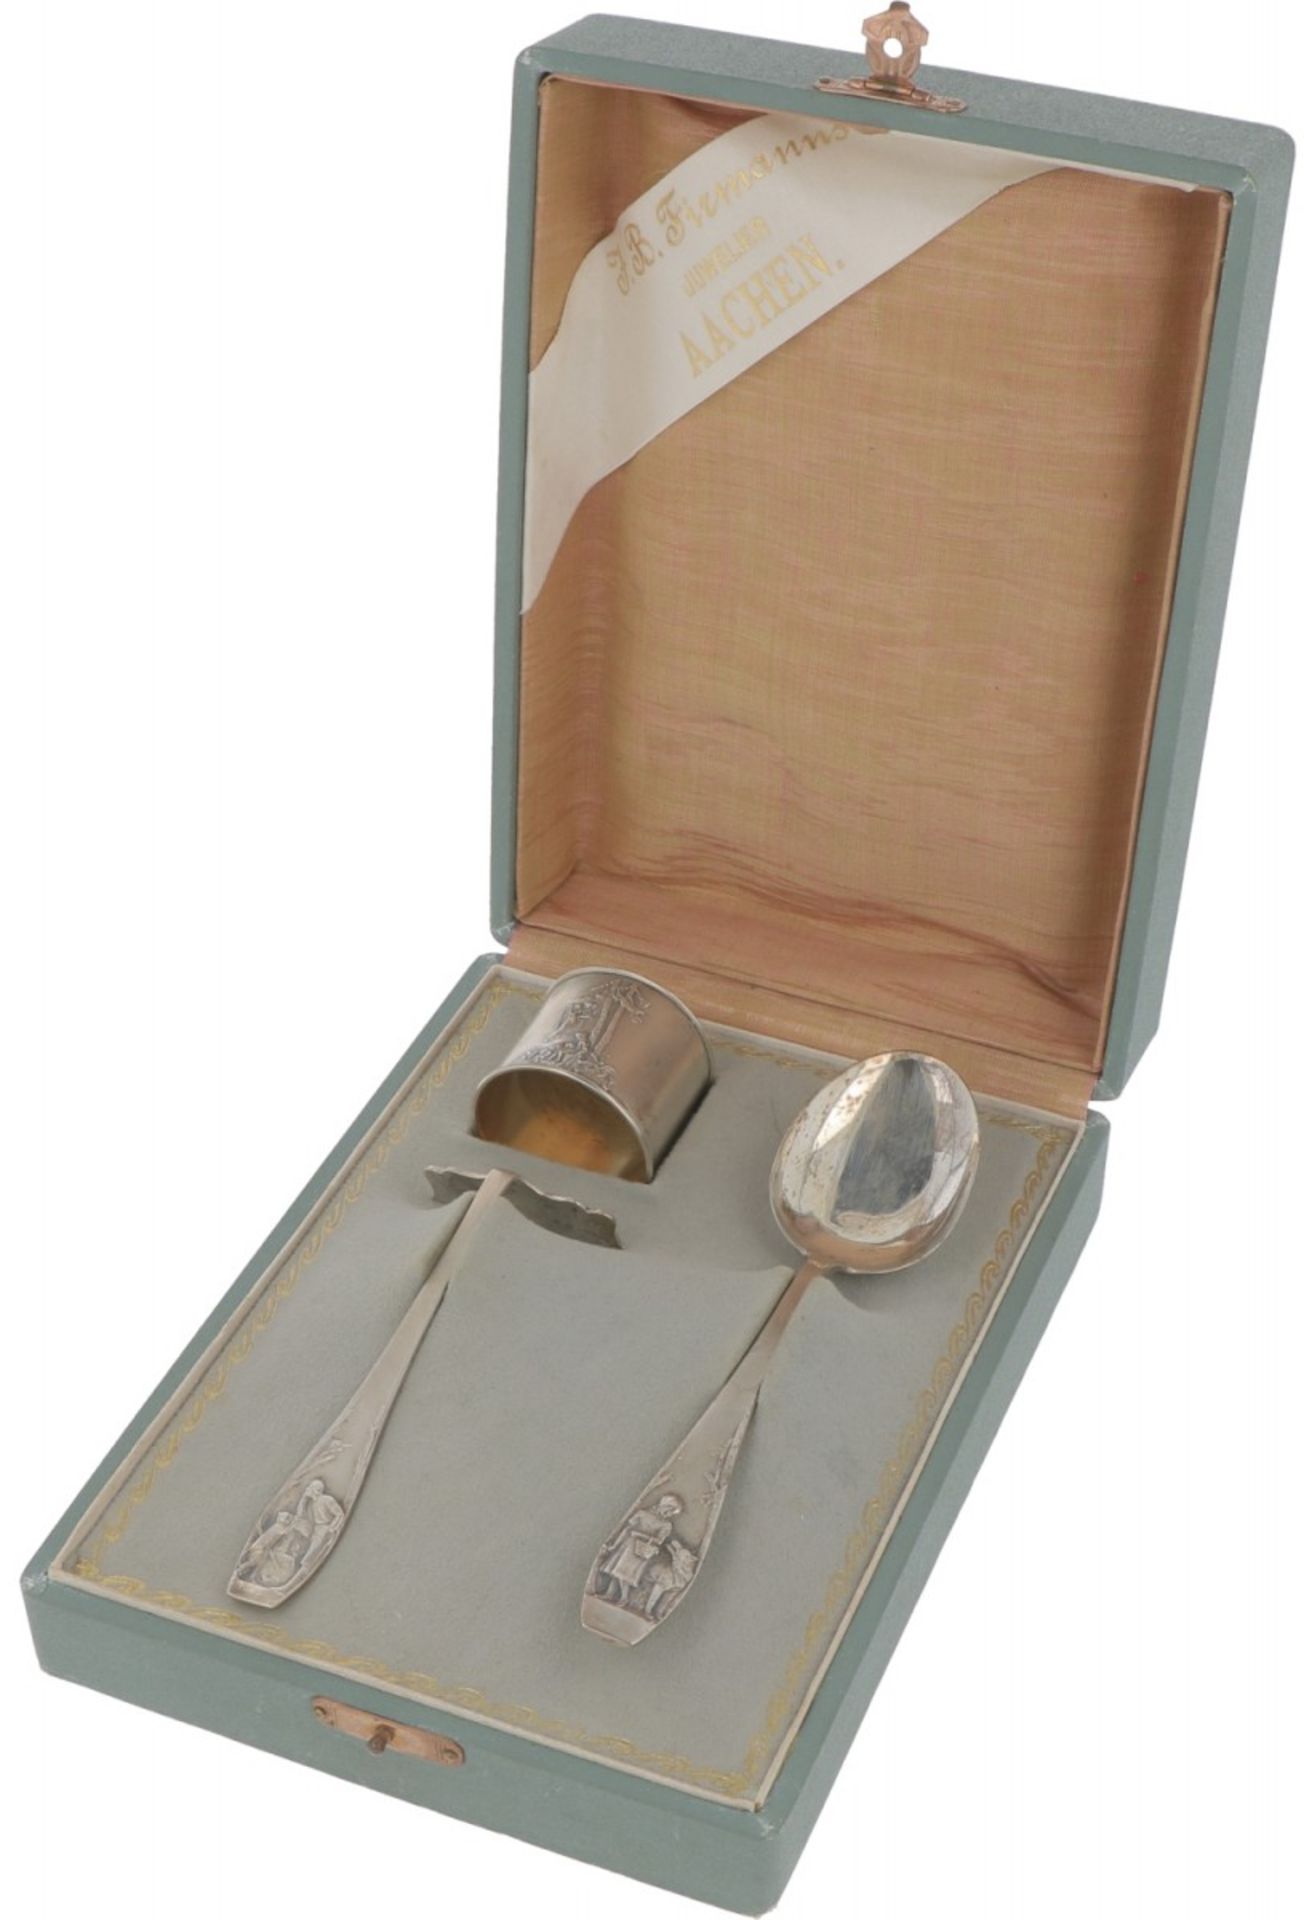 Children's cutlery silver.